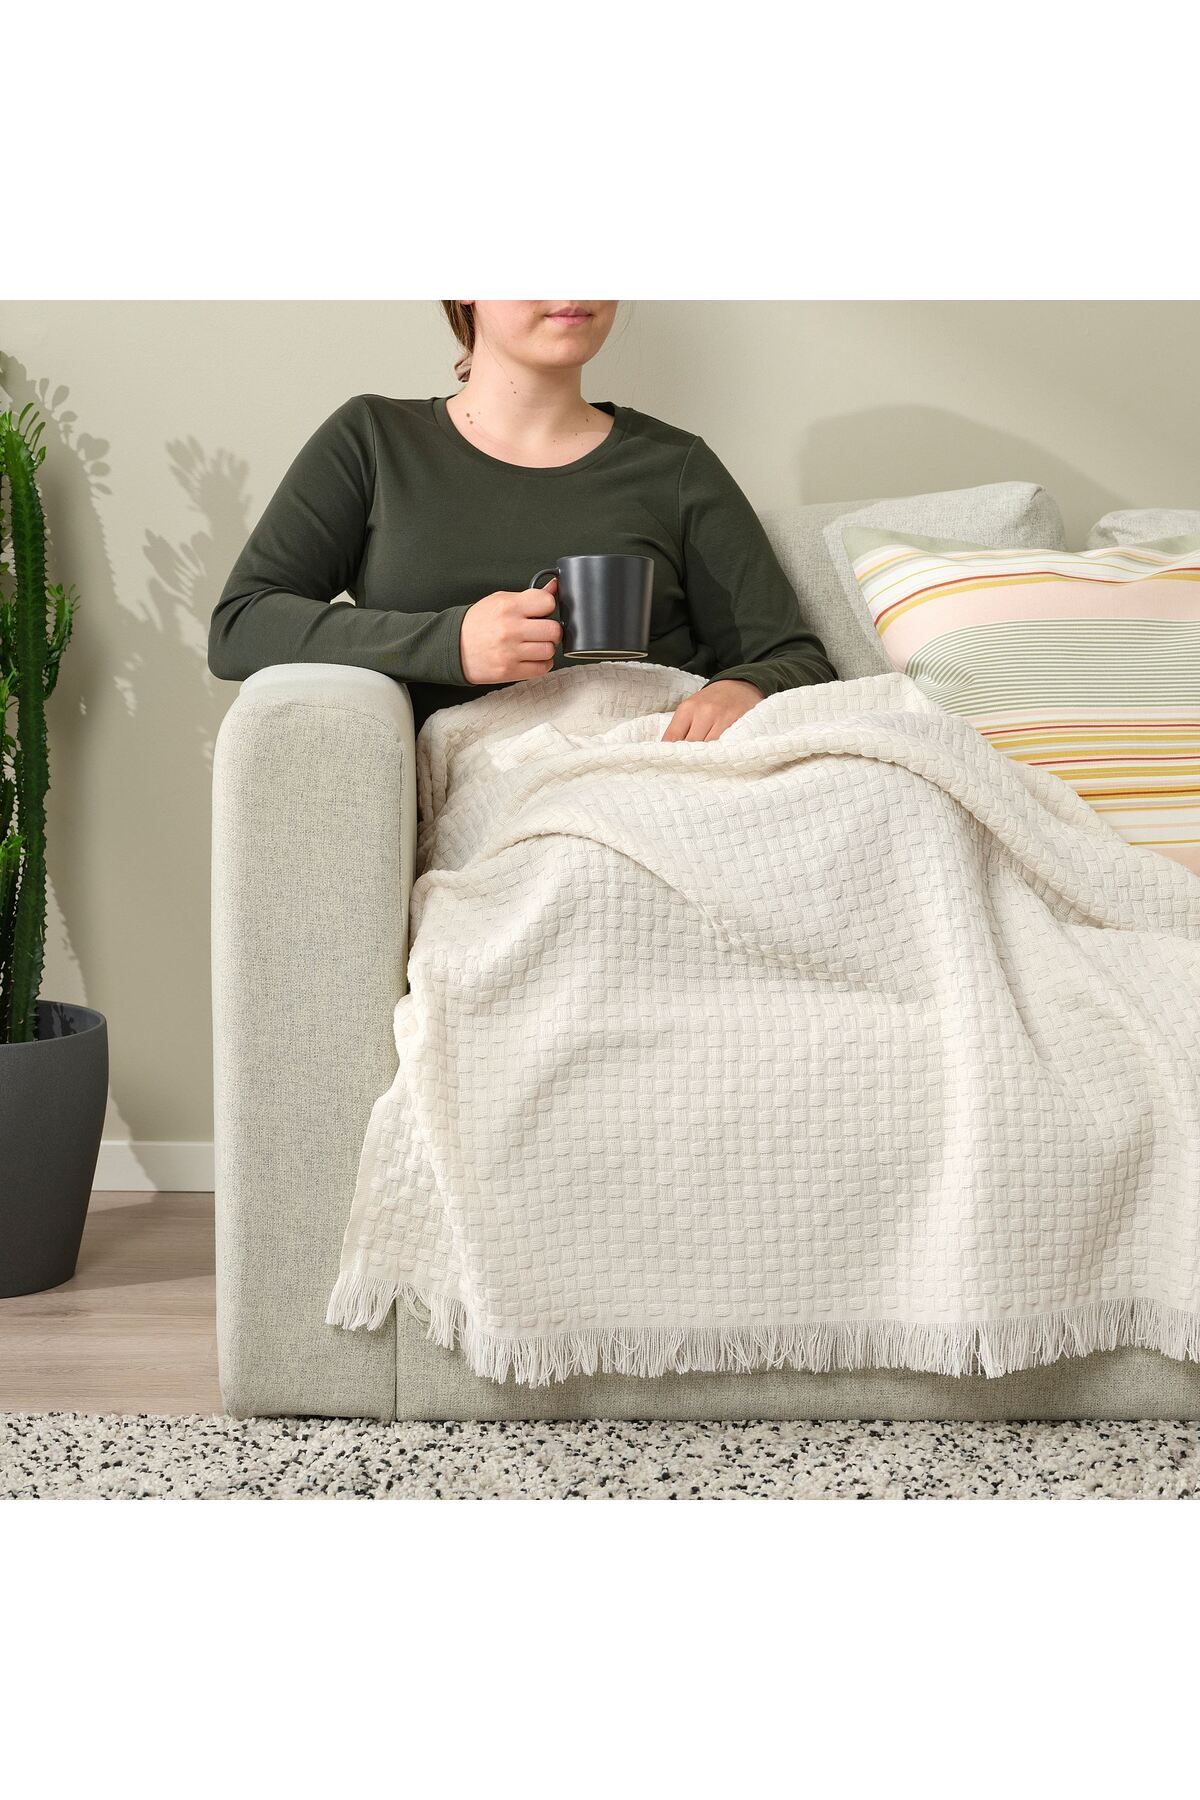 IKEA örtü, battaniye, yumuşak hafif battaniye, 130x170 cm